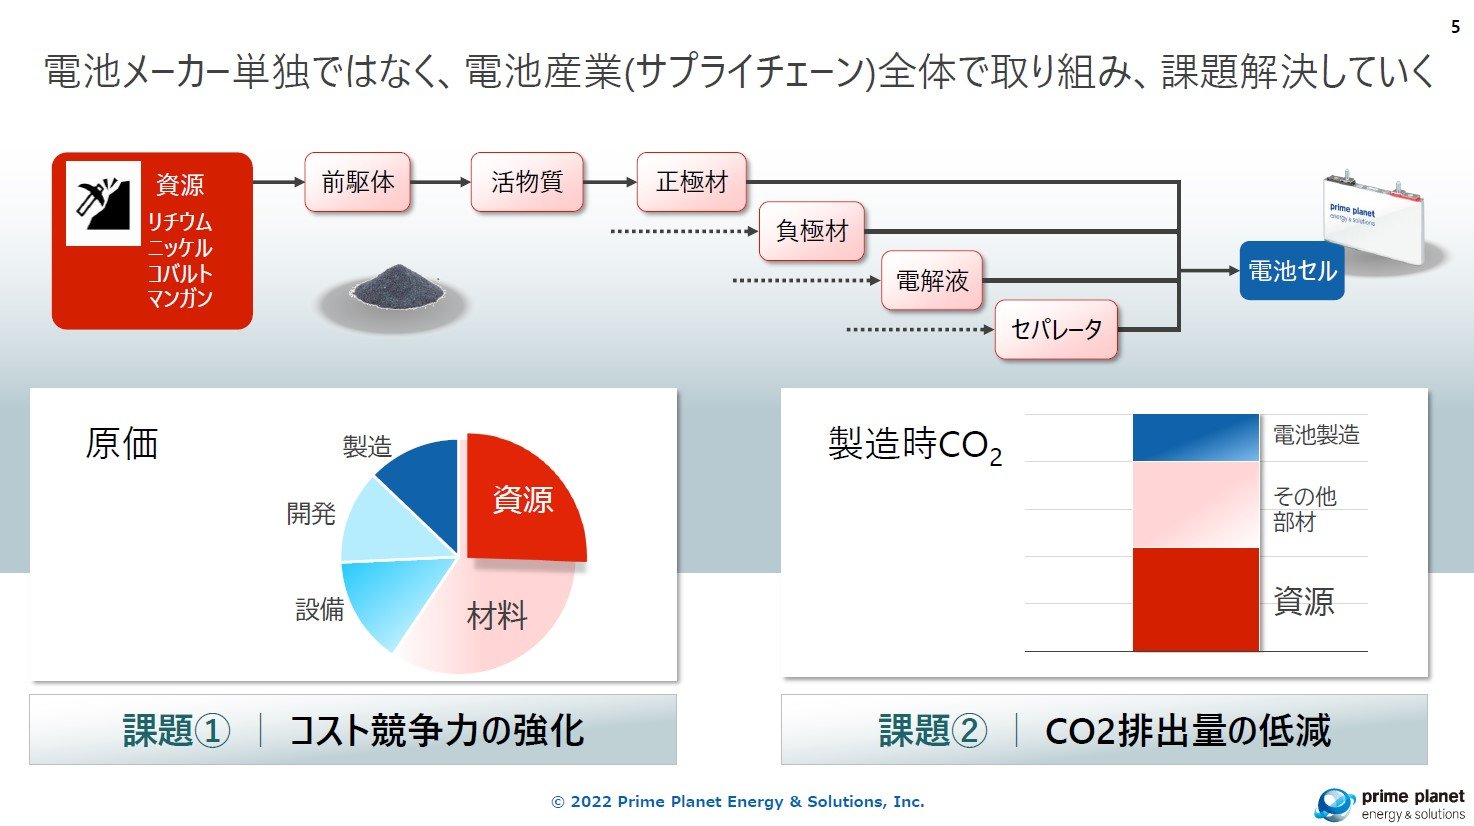 リチウムイオン電池の正極材製造とリサイクル、産学でCO2排出量とコストを半減